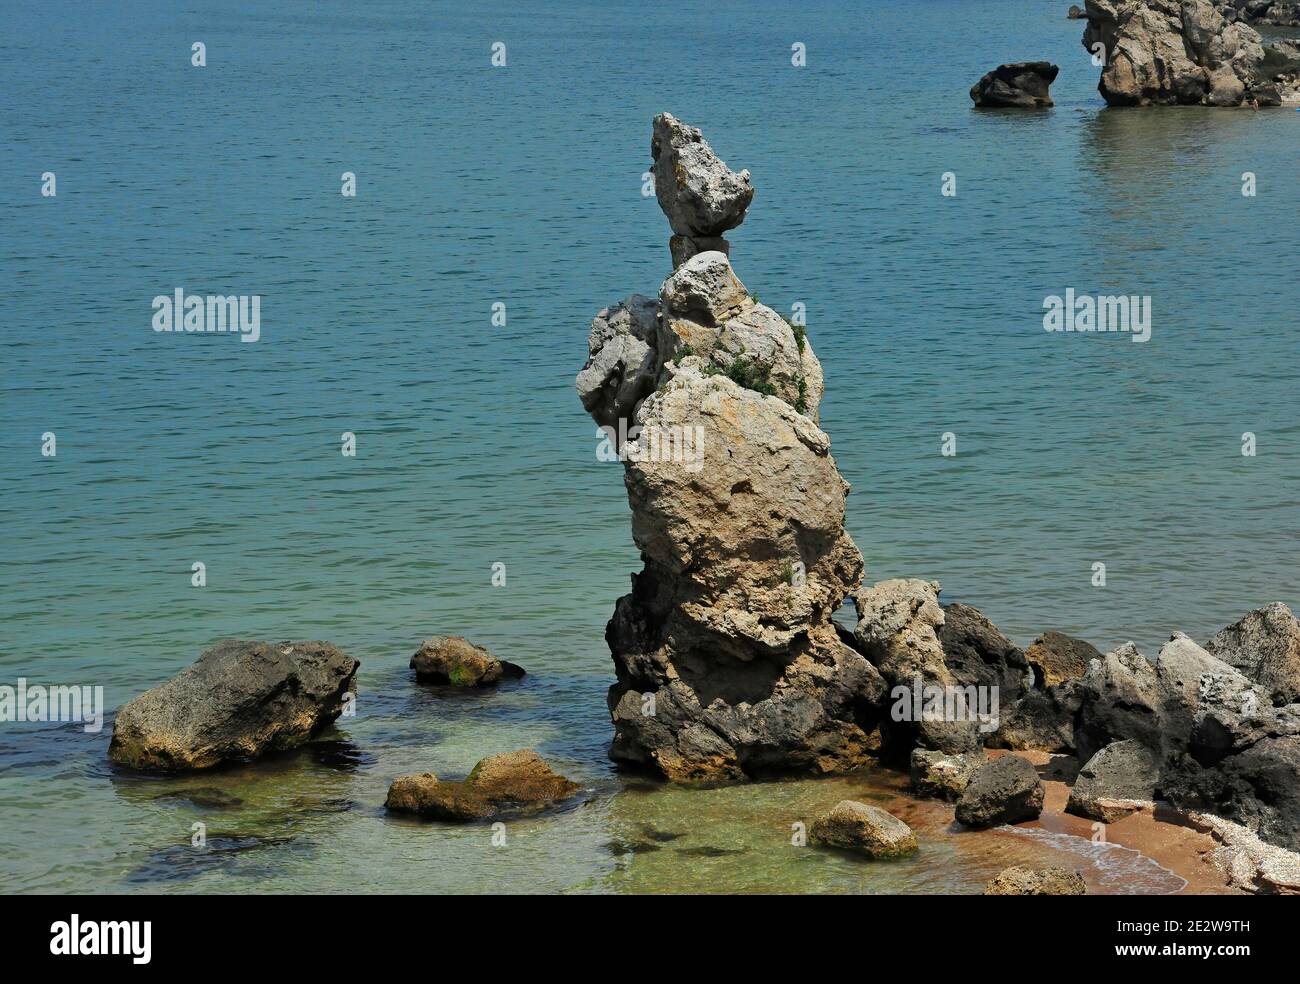 Magnifique statue en pierre au bord de la mer. Banque D'Images